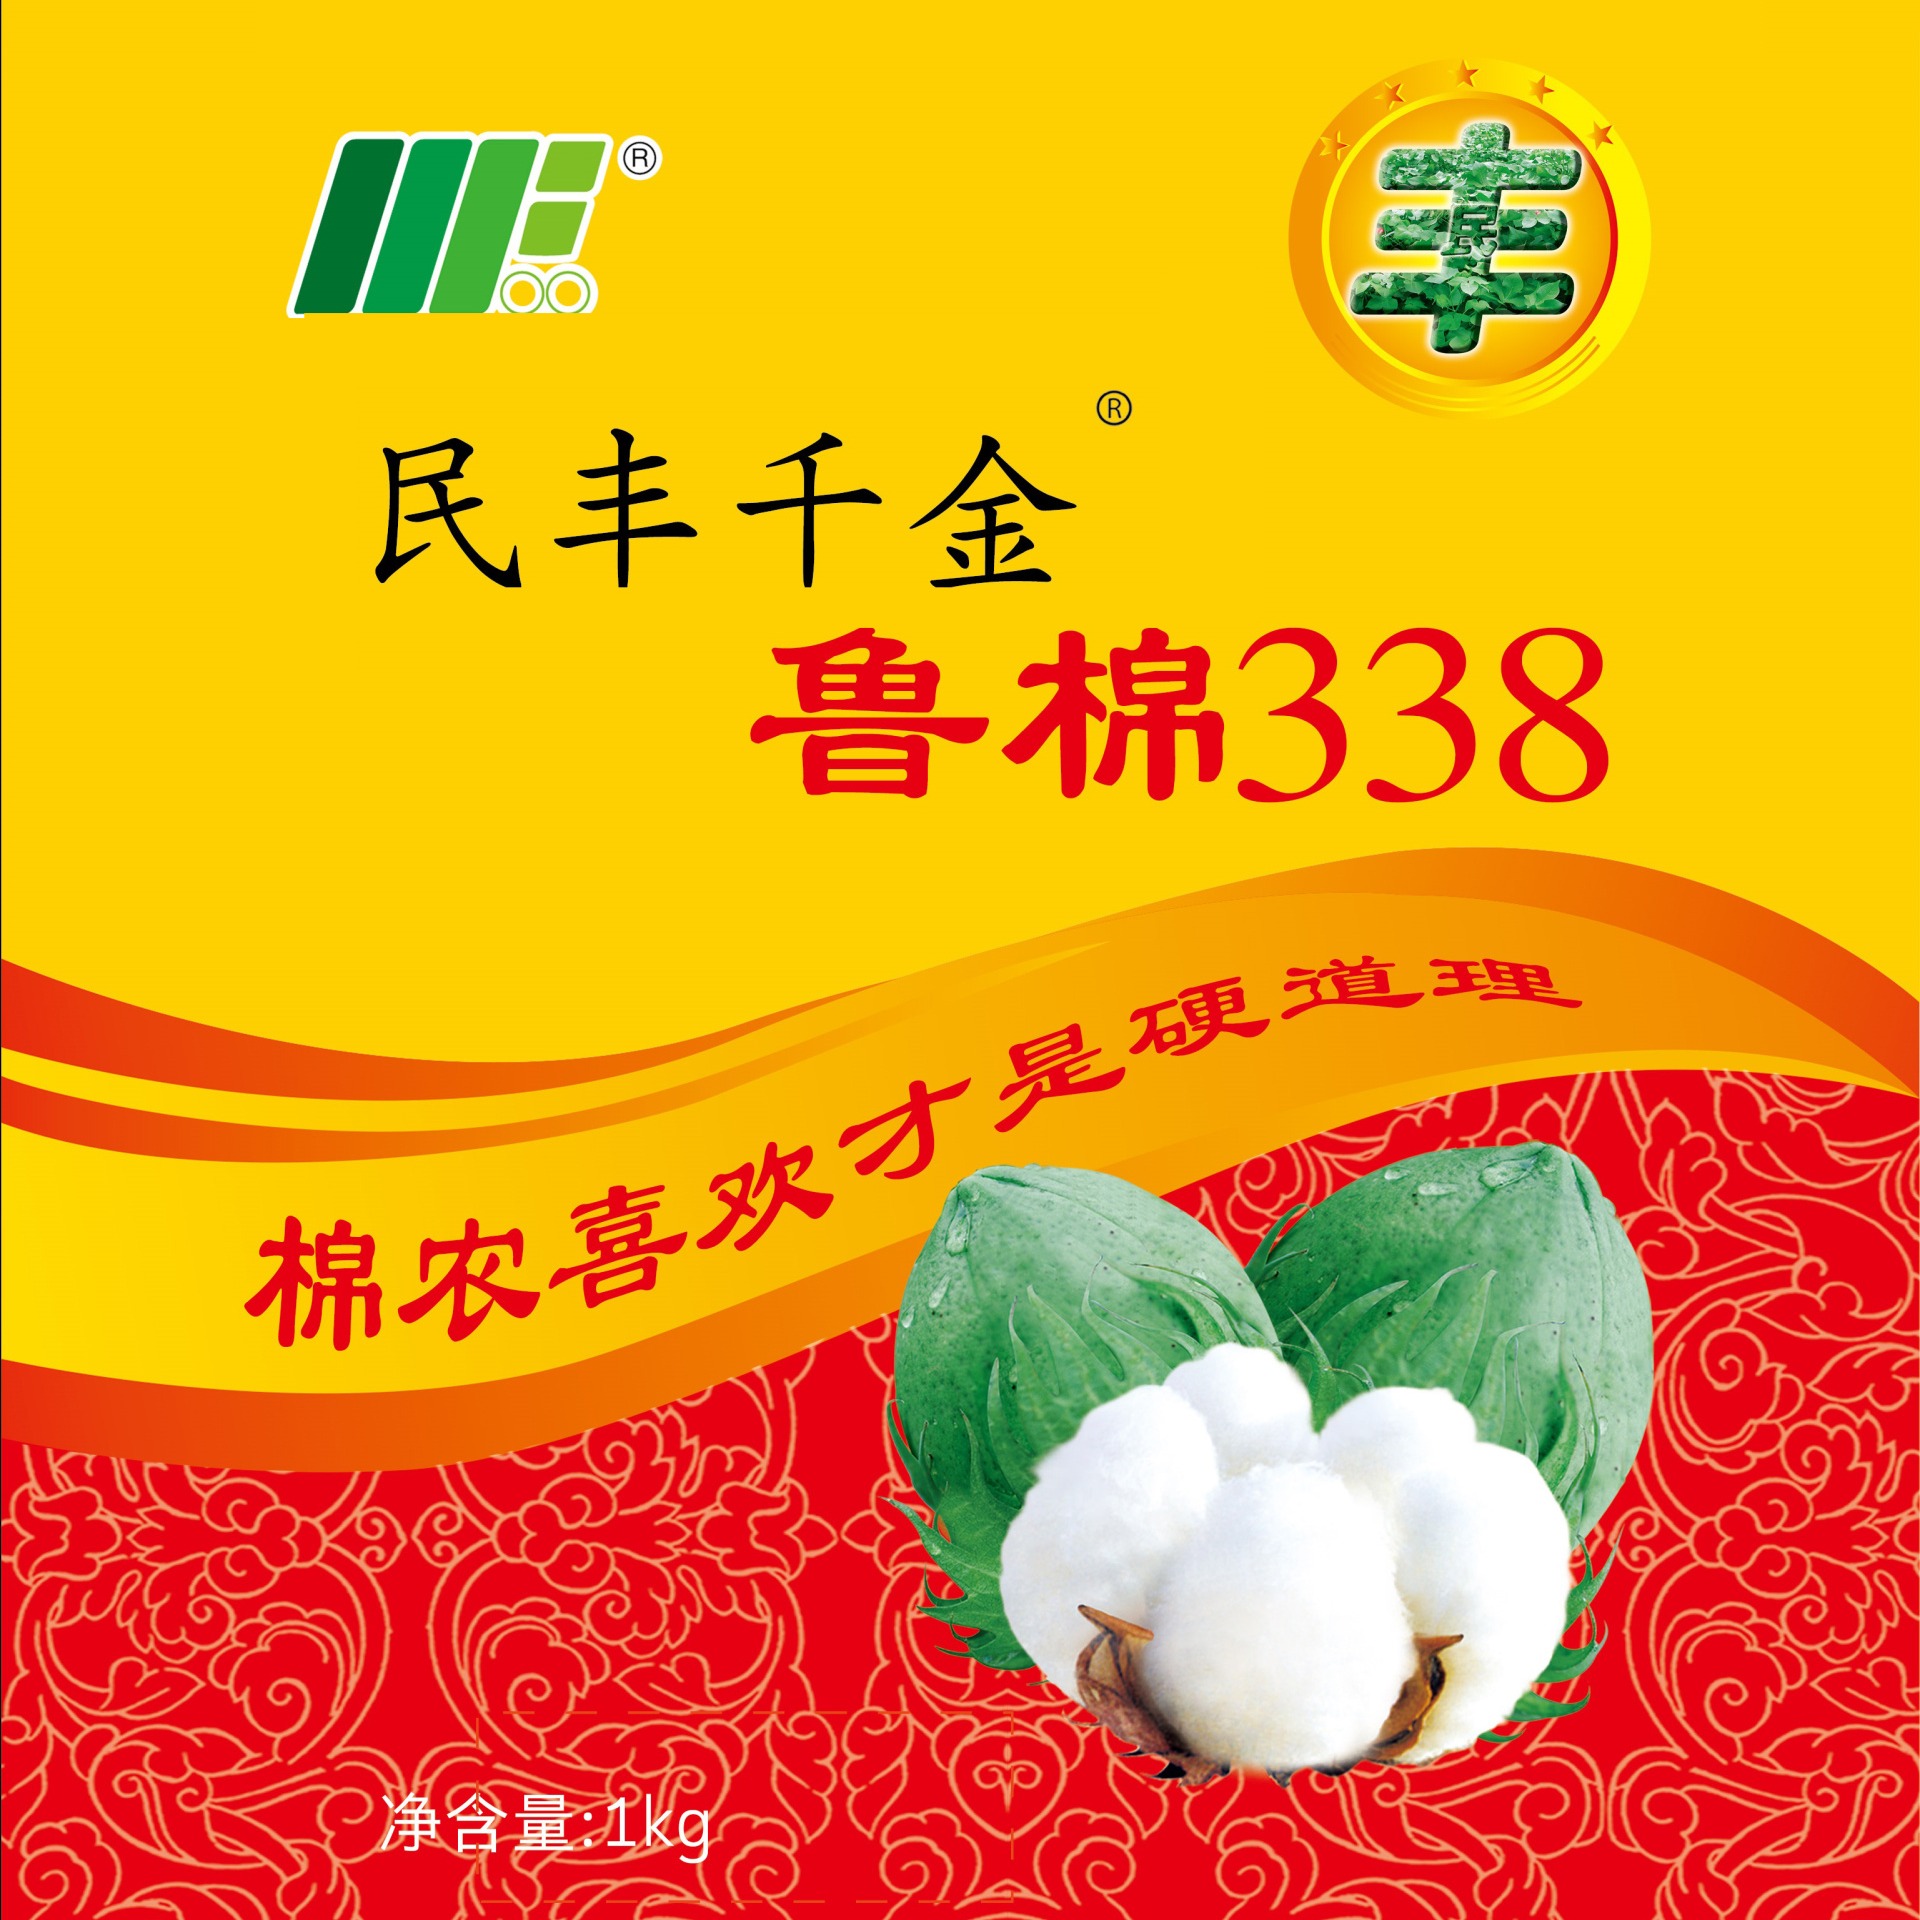 鲁棉338  338  棉花种子  转基因抗虫棉  棉花  种子